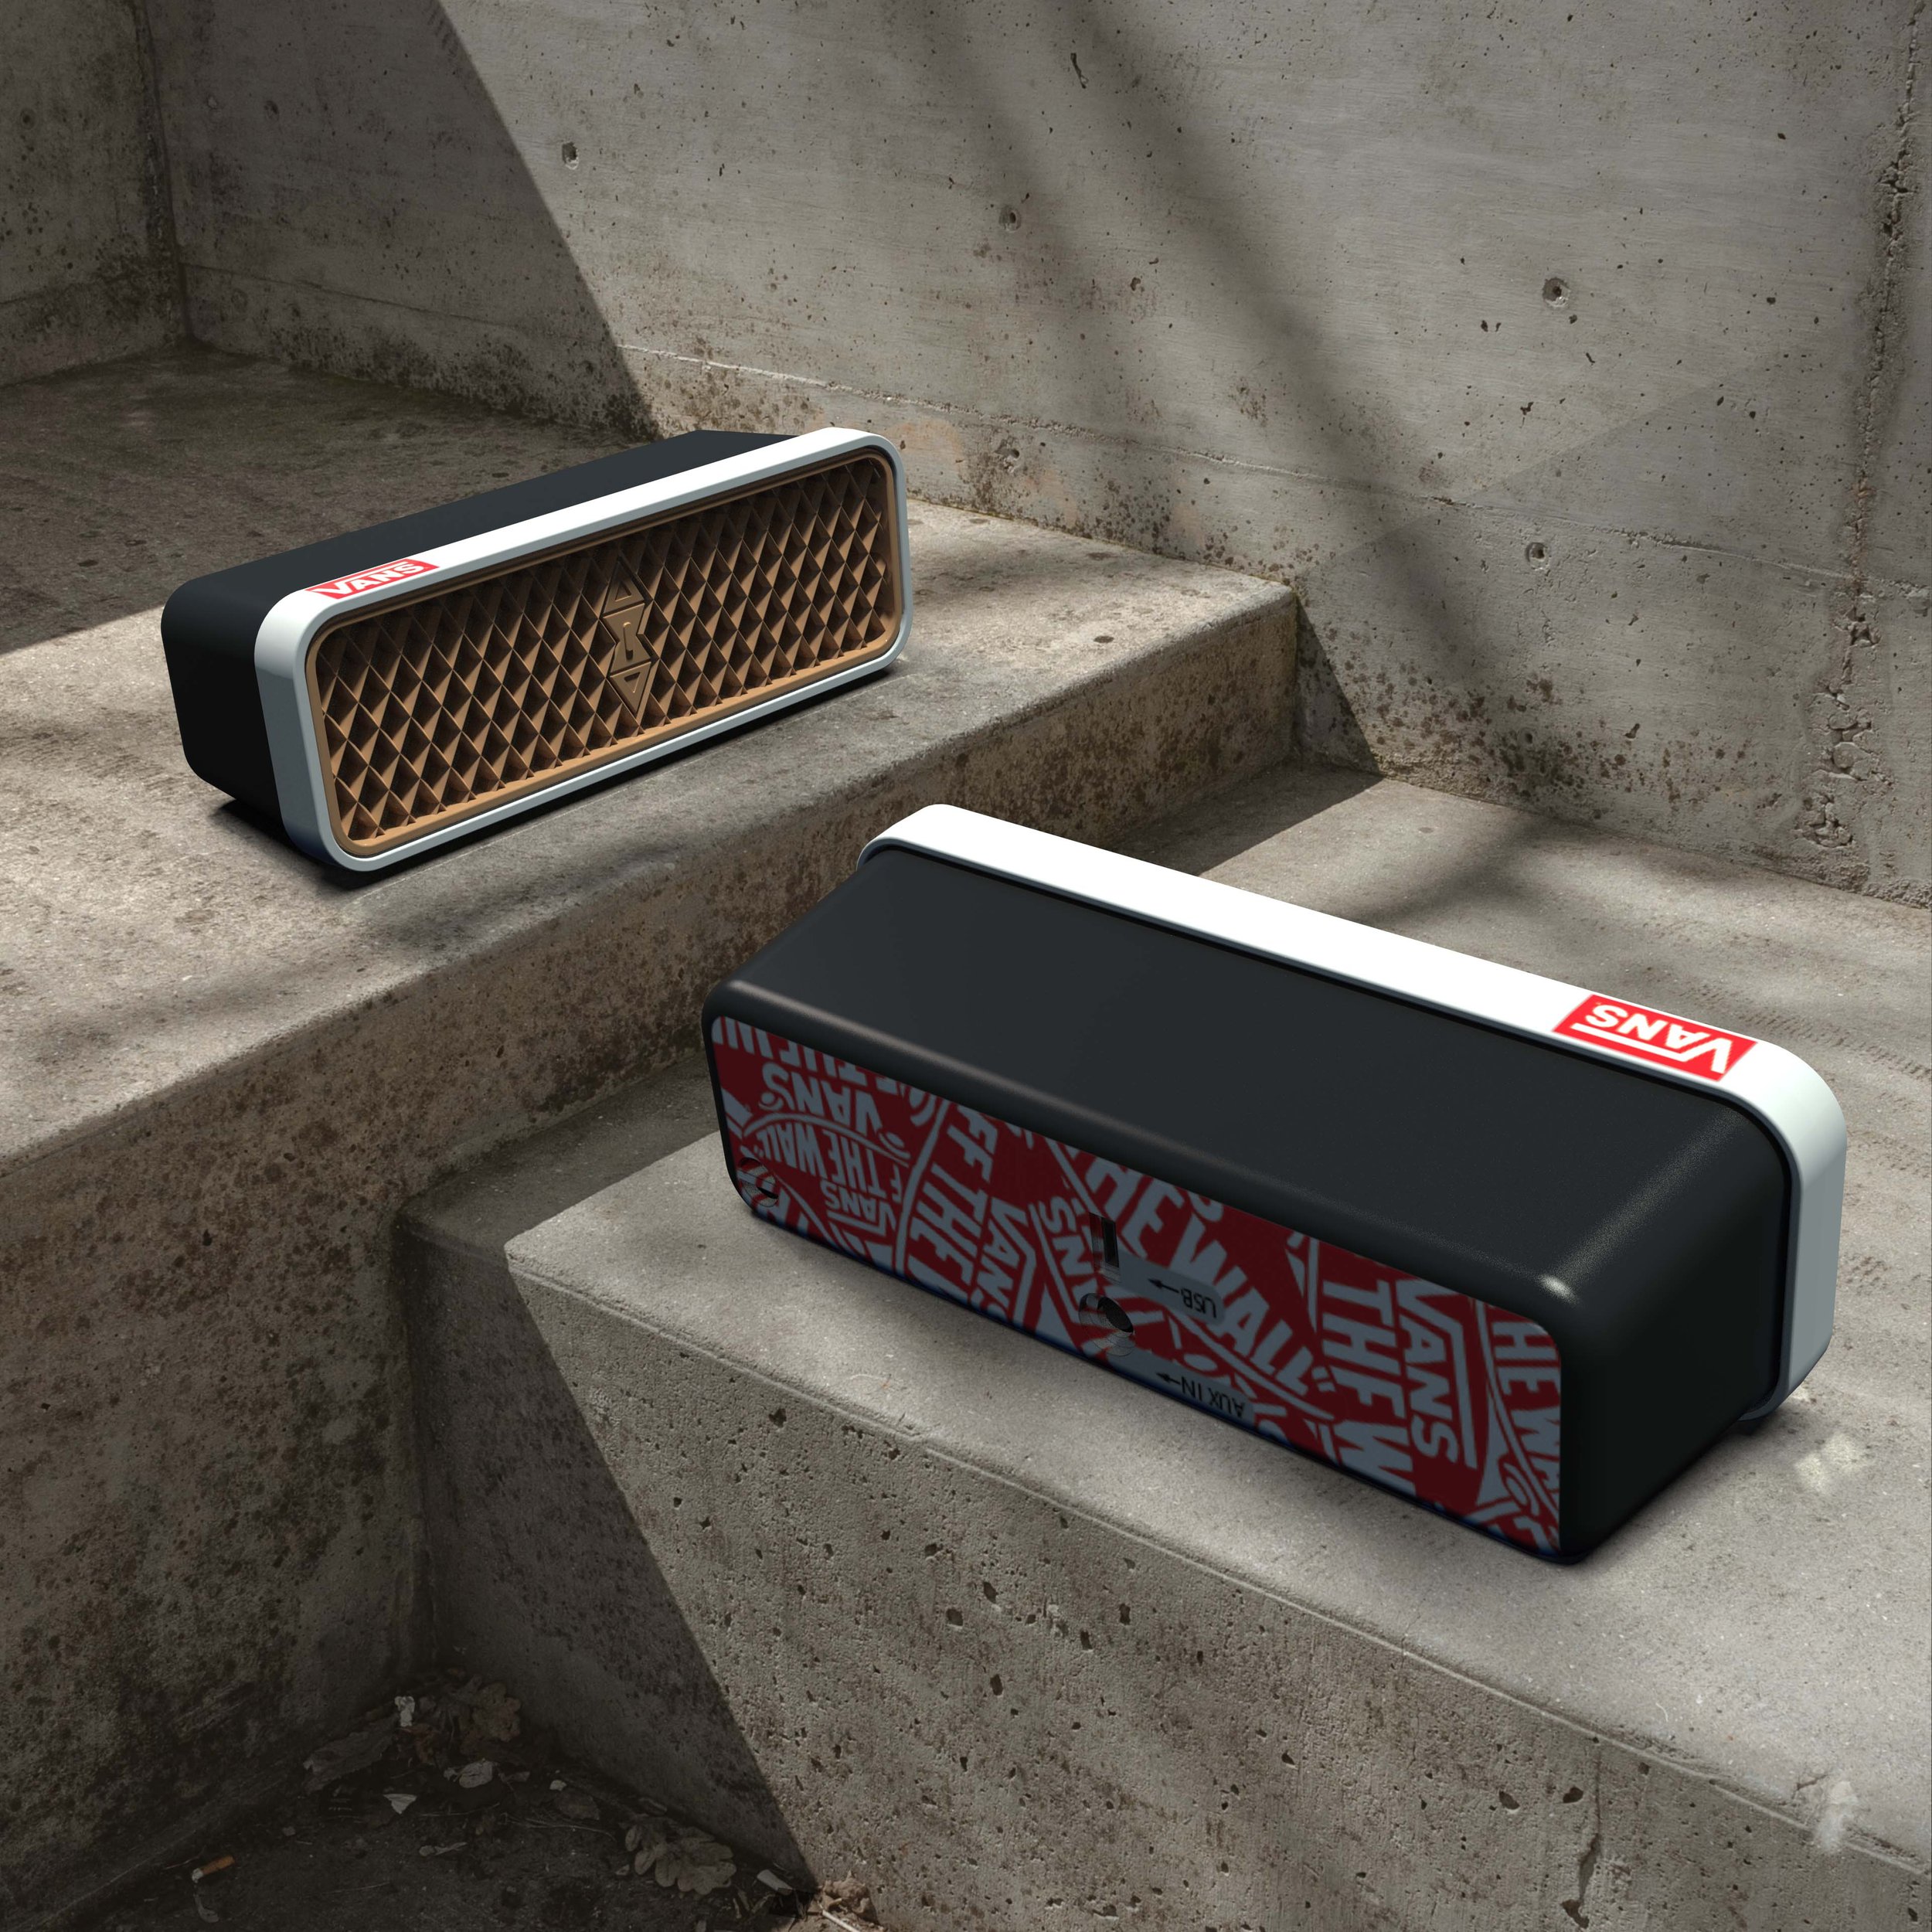 verachten Onverschilligheid op gang brengen Vans Portable Speaker — Benjamin Alvis Design